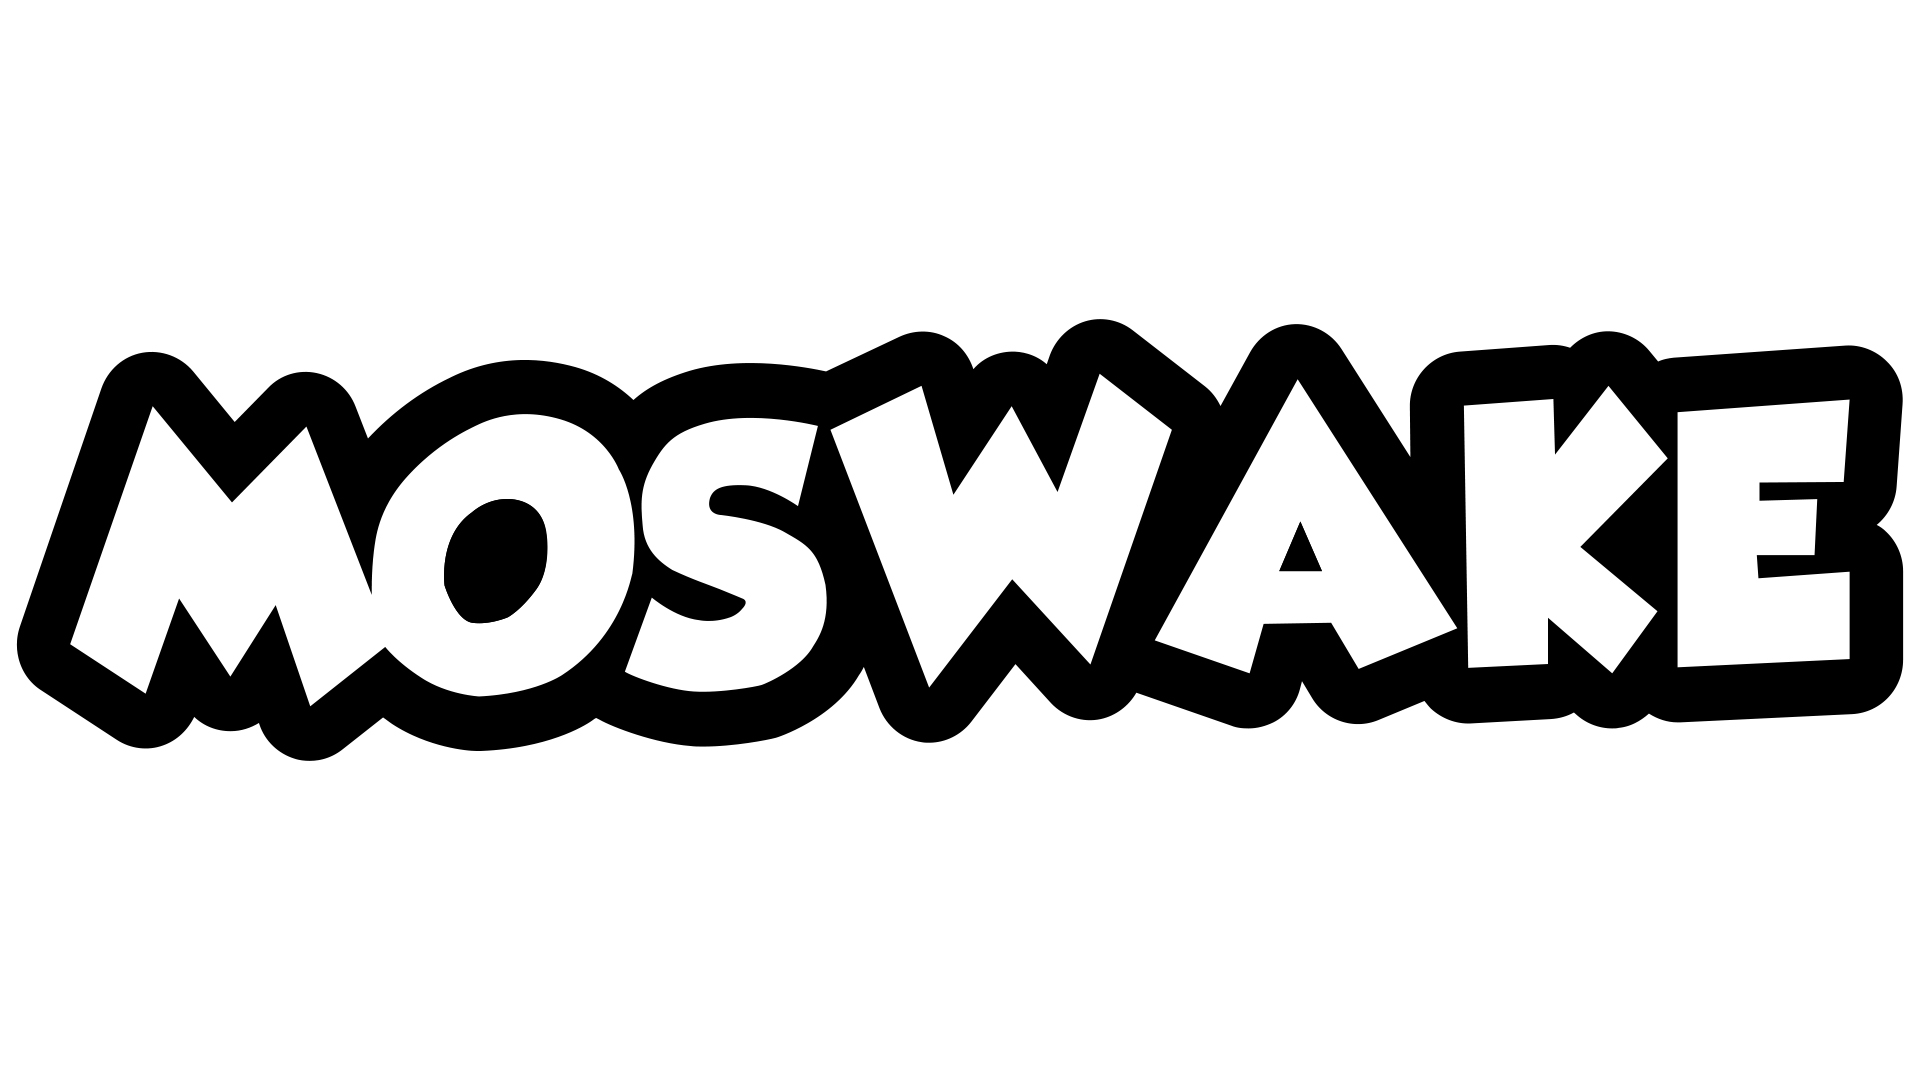 Moswake